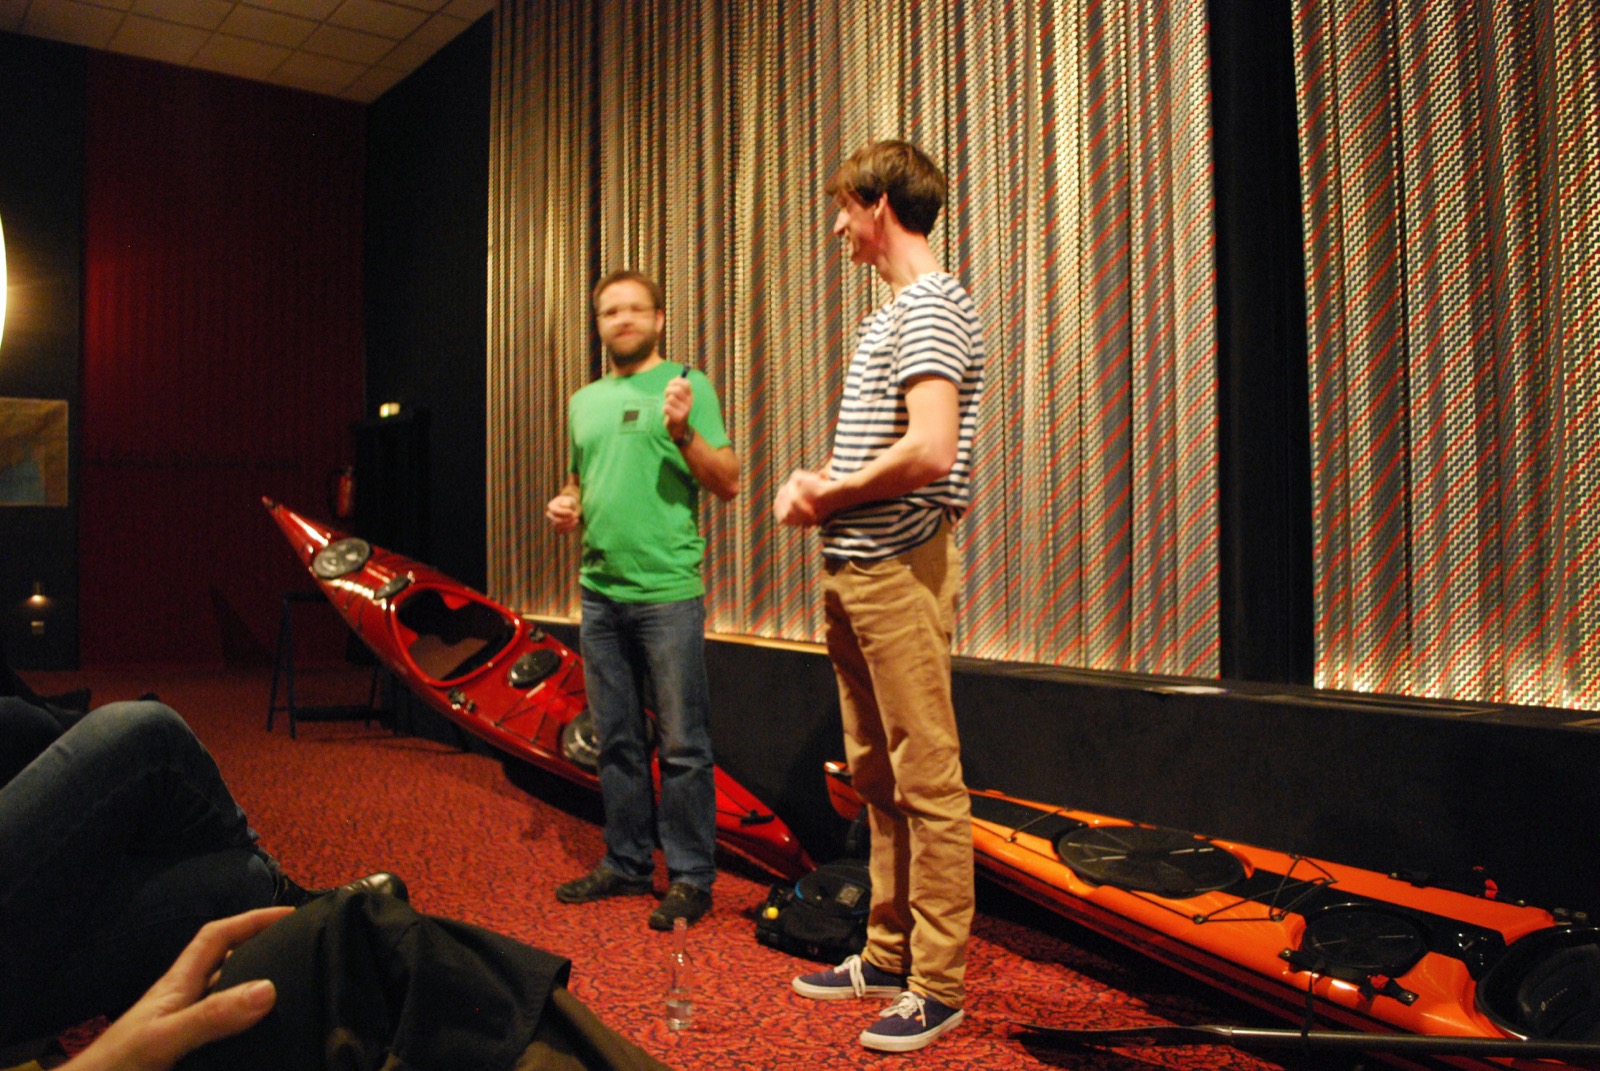 Zwei Männer stehen vor einer Kinoleinwand und moderieren einen Film an.